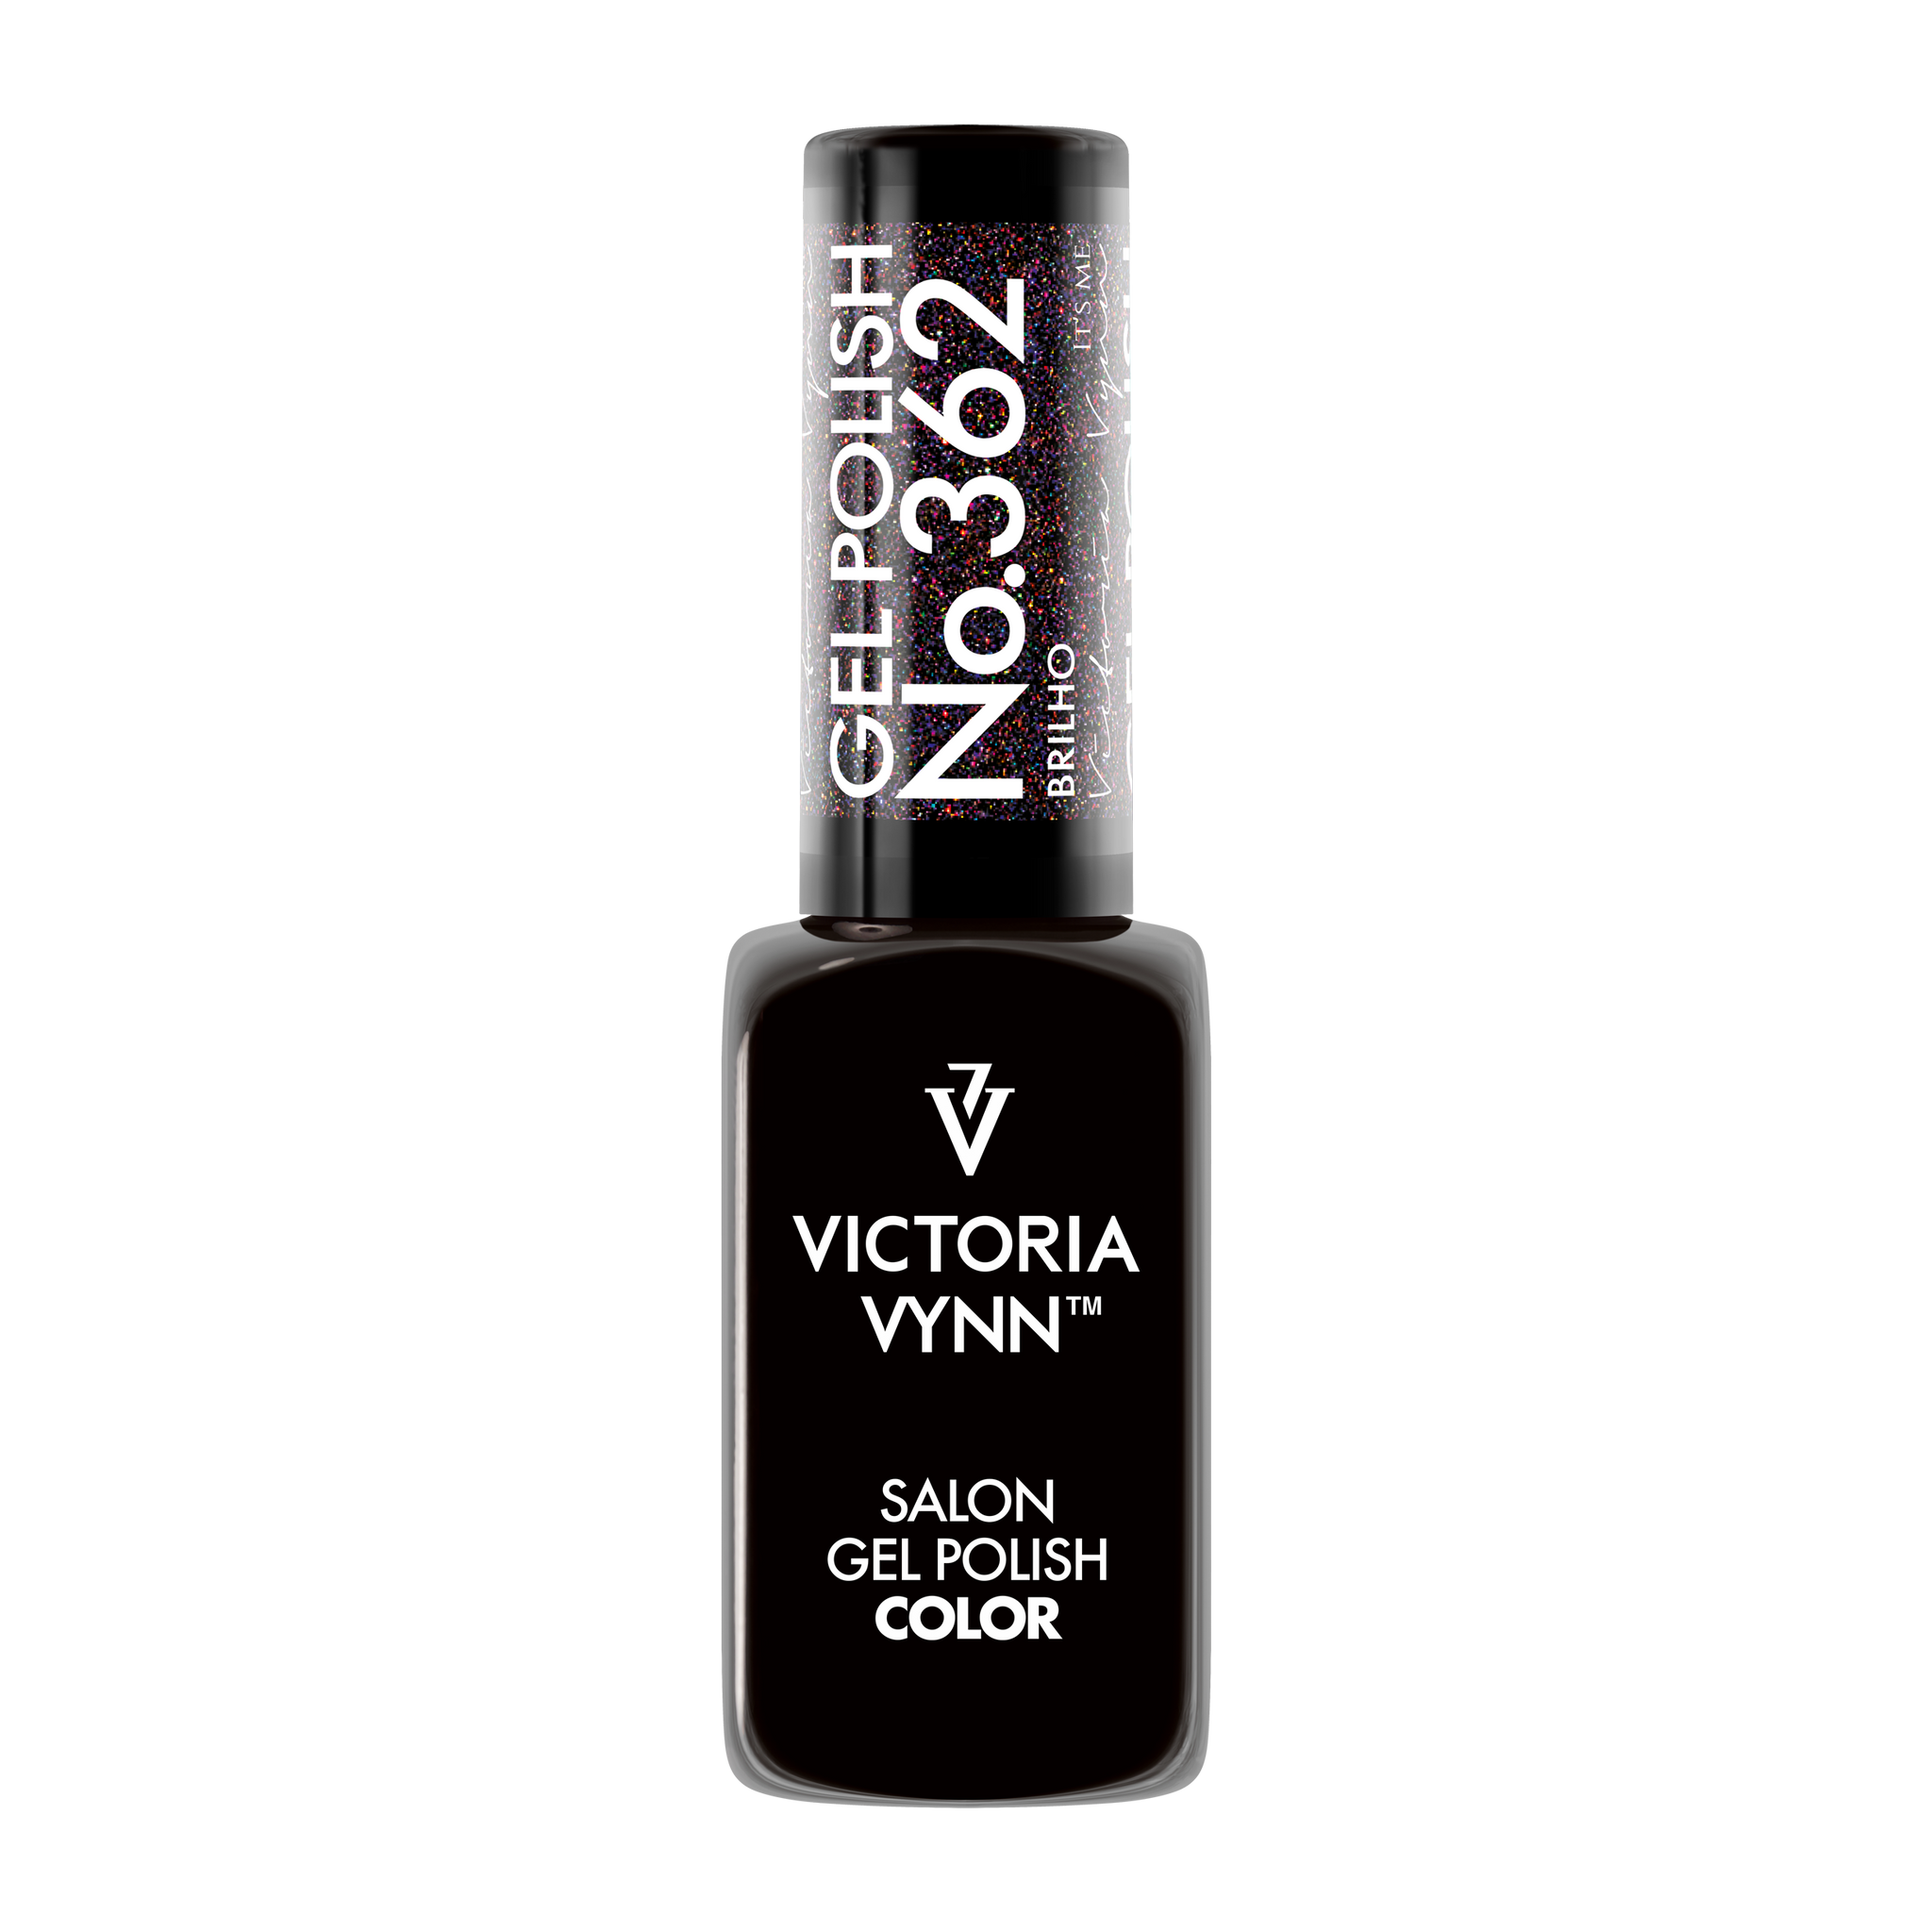 Victoria Vynn Gel Polish 362 Brilho 8ml